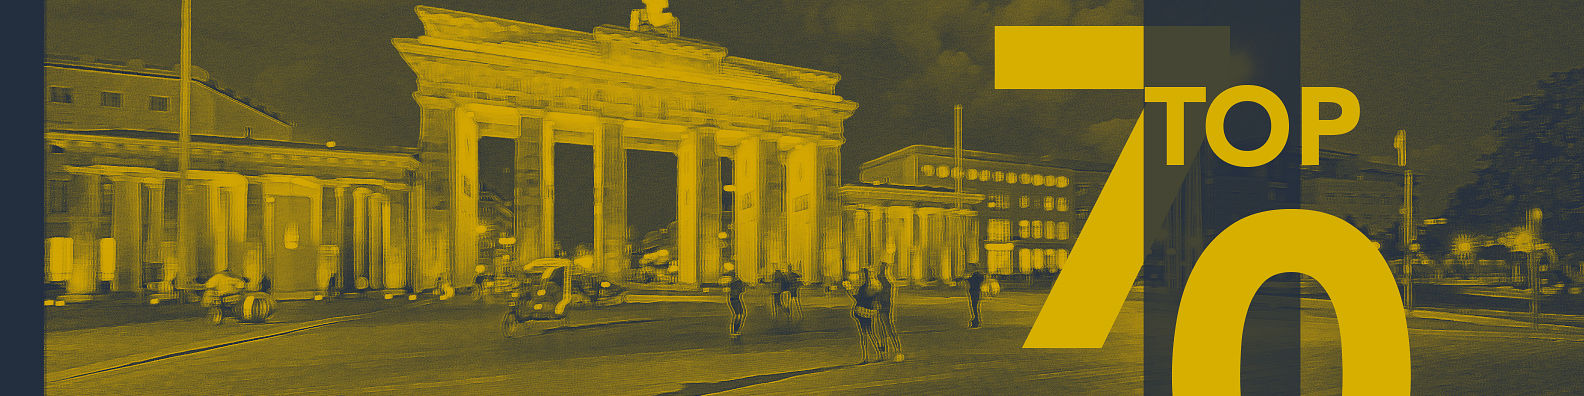 Top 70 Die Berliner Gesellschaft im Imagetest